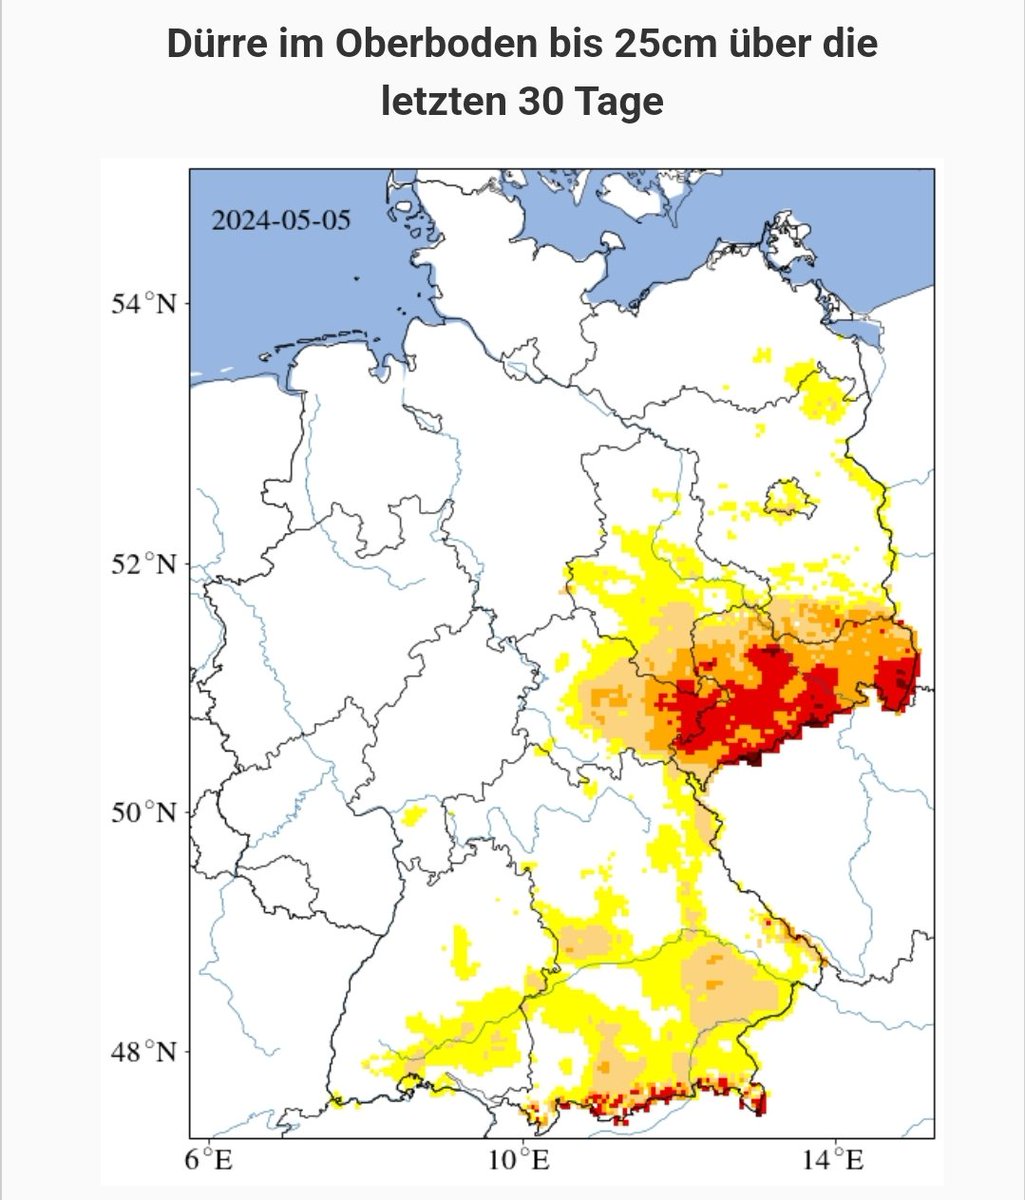 Wir haben in Teilen Deutschlands eine extreme Dürre, überrascht?